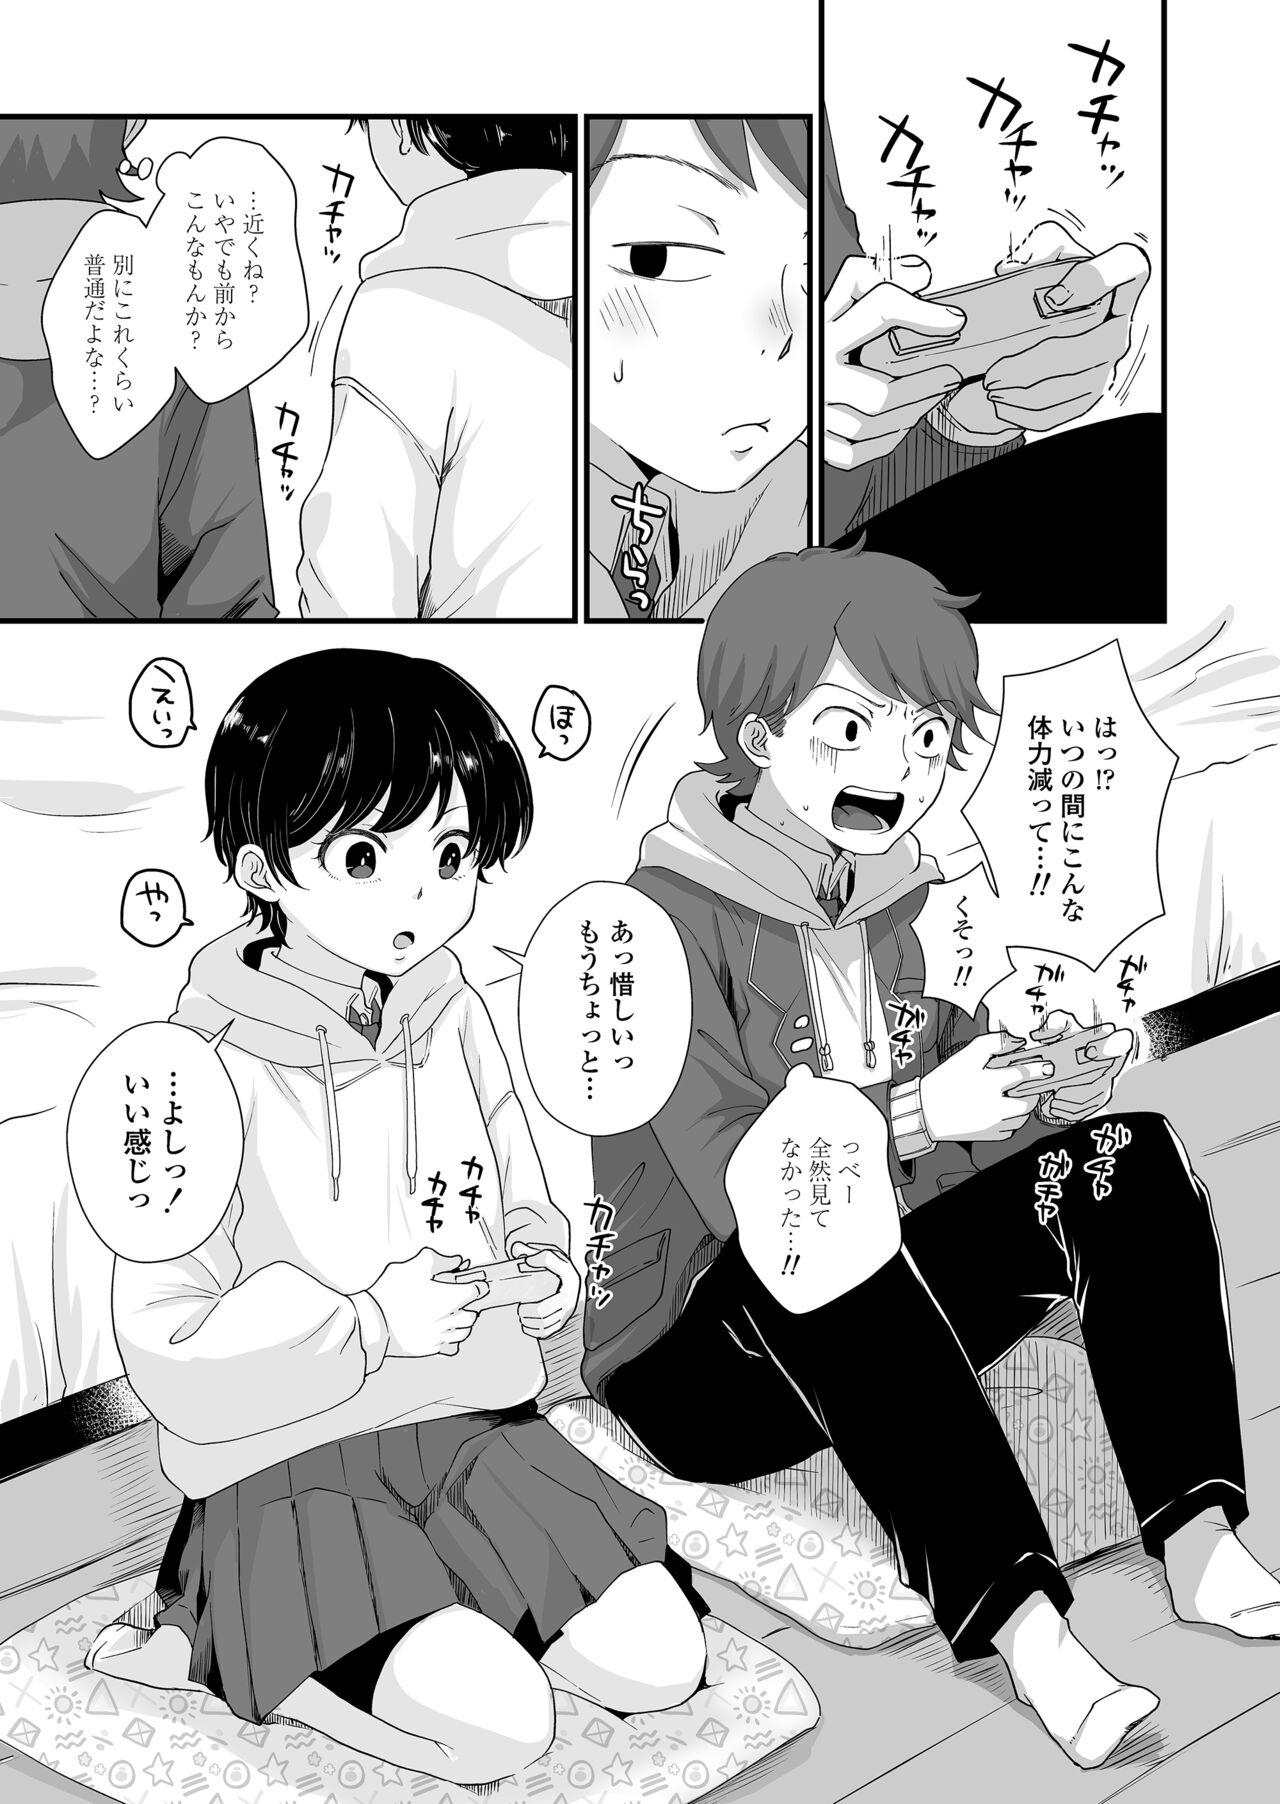 Riding Futari wa Ki ni Naru Otoshigoro - Original 4some - Page 2